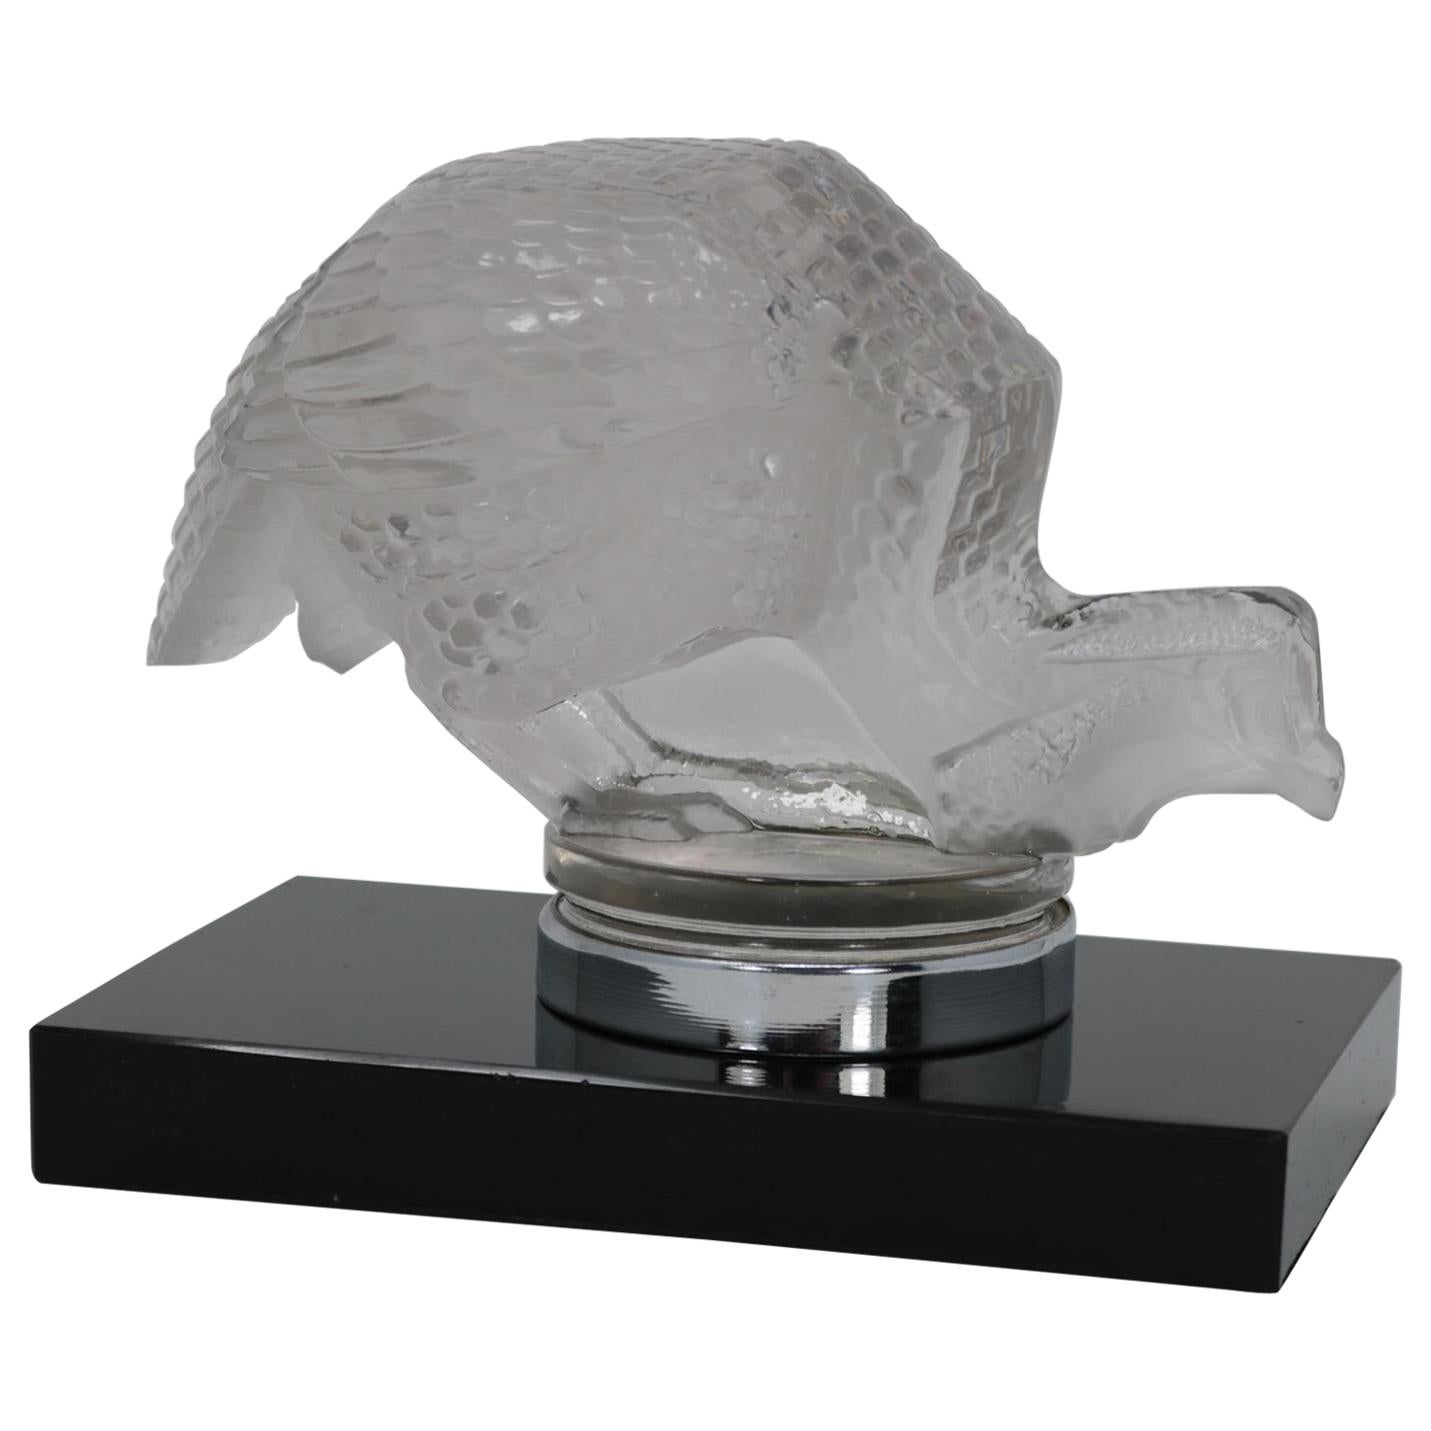 René Lalique Glass 'Pintade' Guinea Fowl Car Mascot